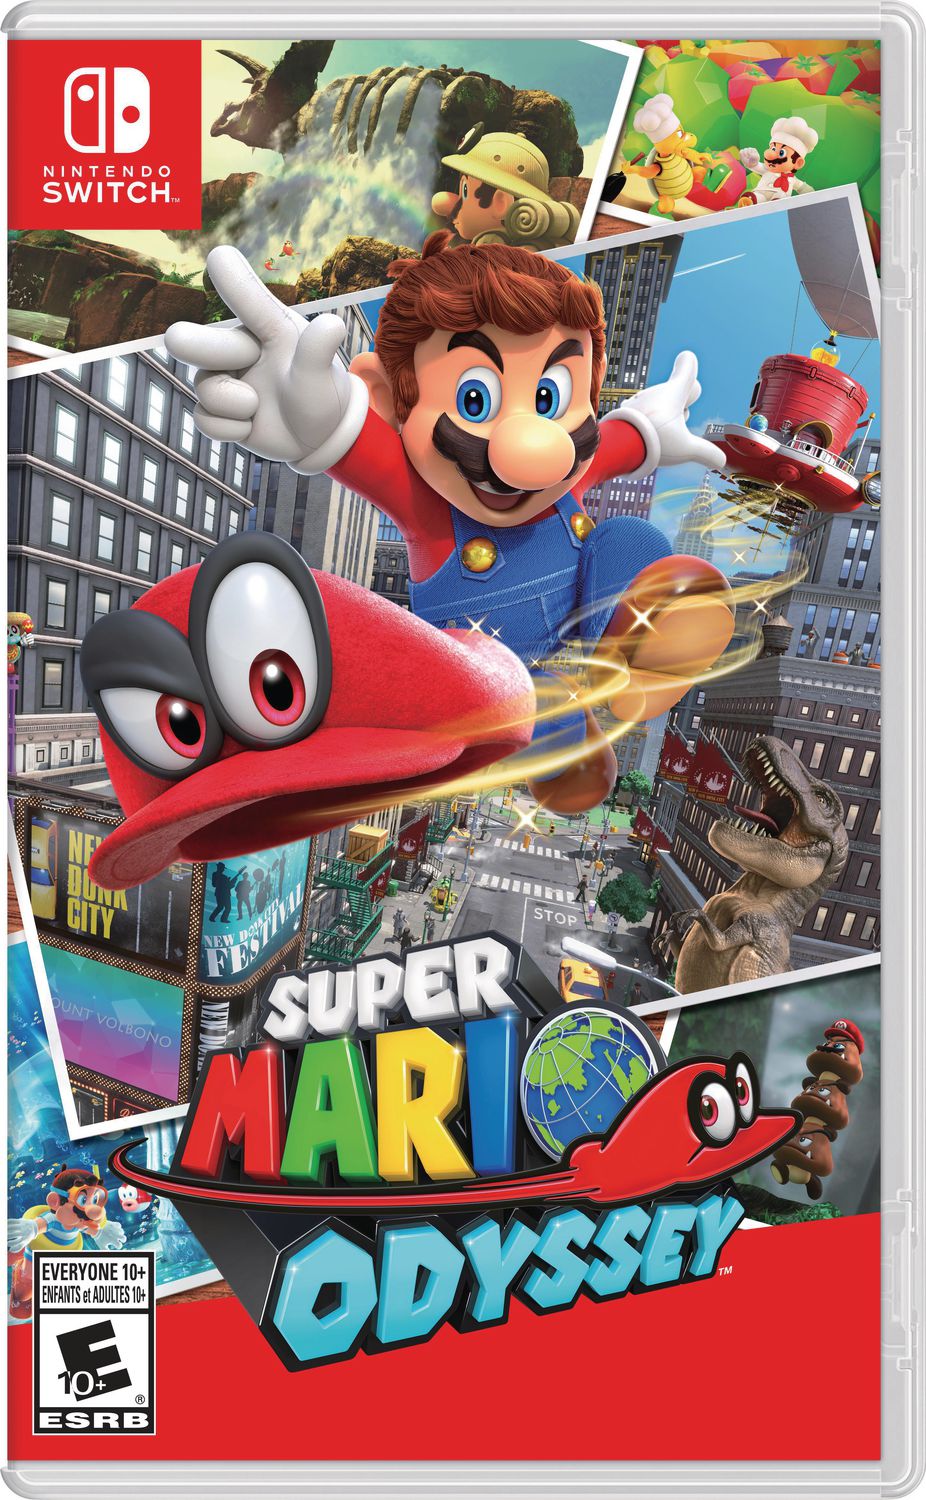 Alimentez une manette sans fil Mario Joy Red pour Nintendo Switch